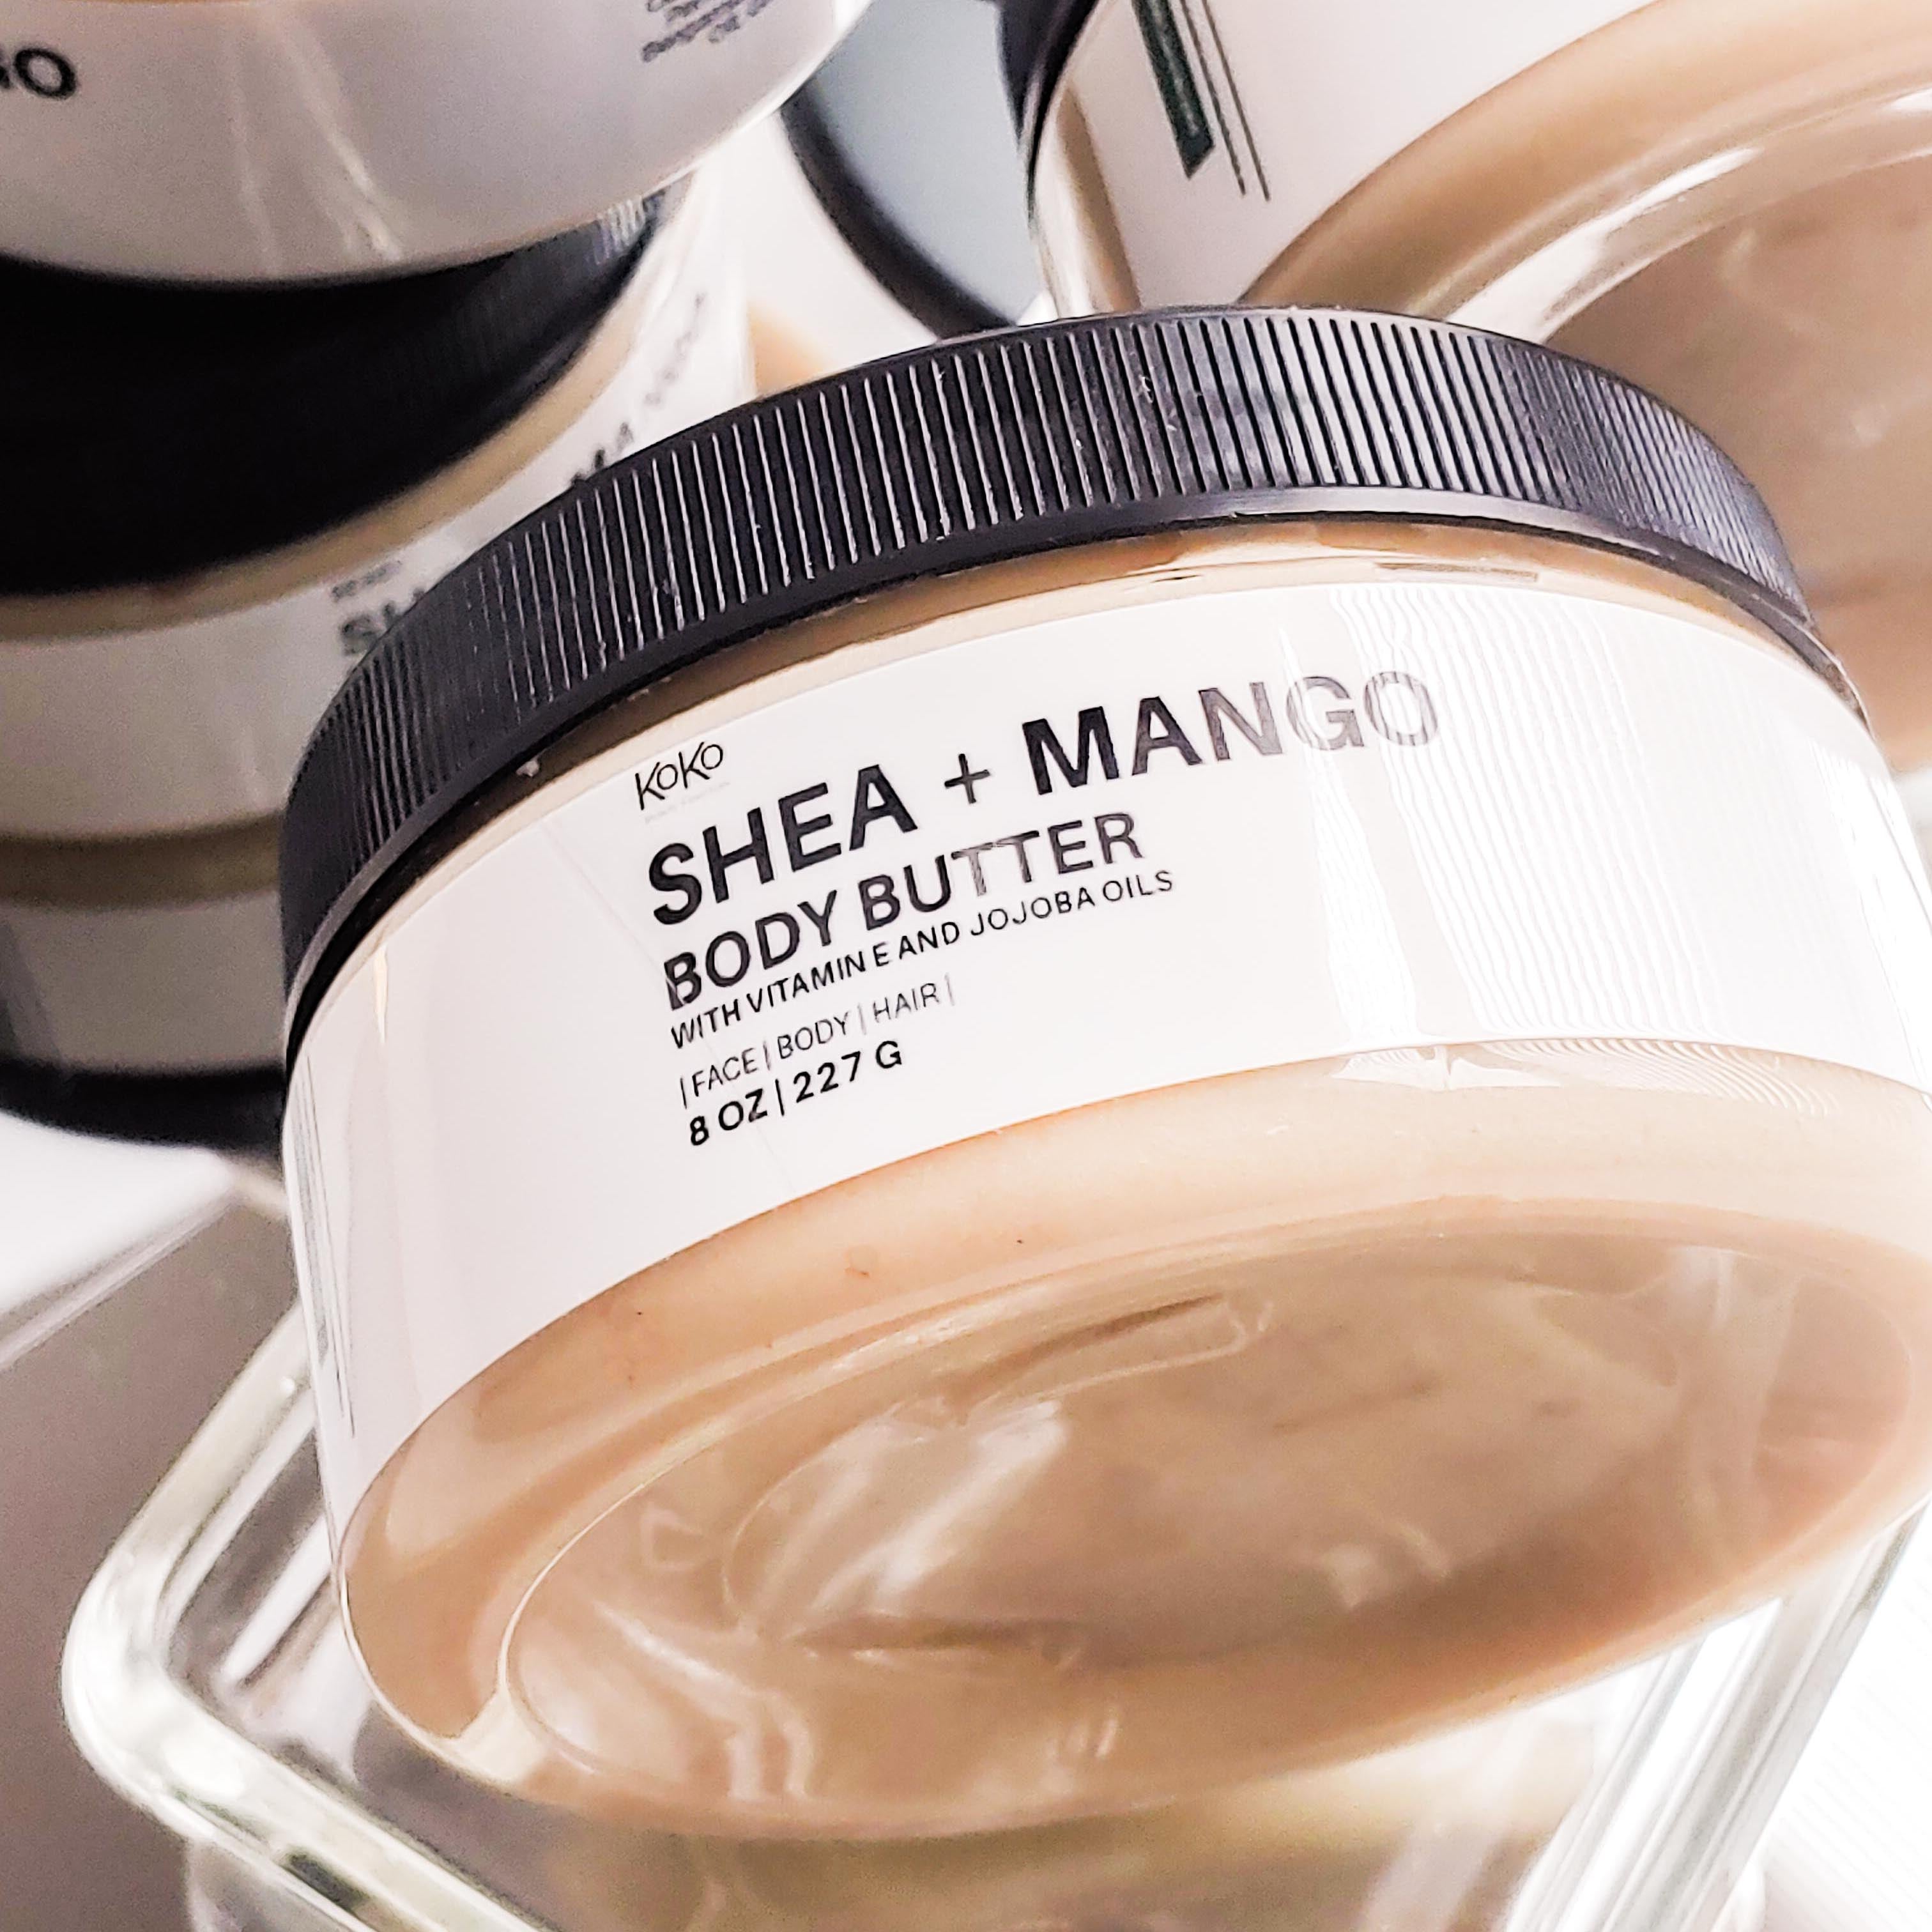 Shea Mango Body Butter - Now Whipped!